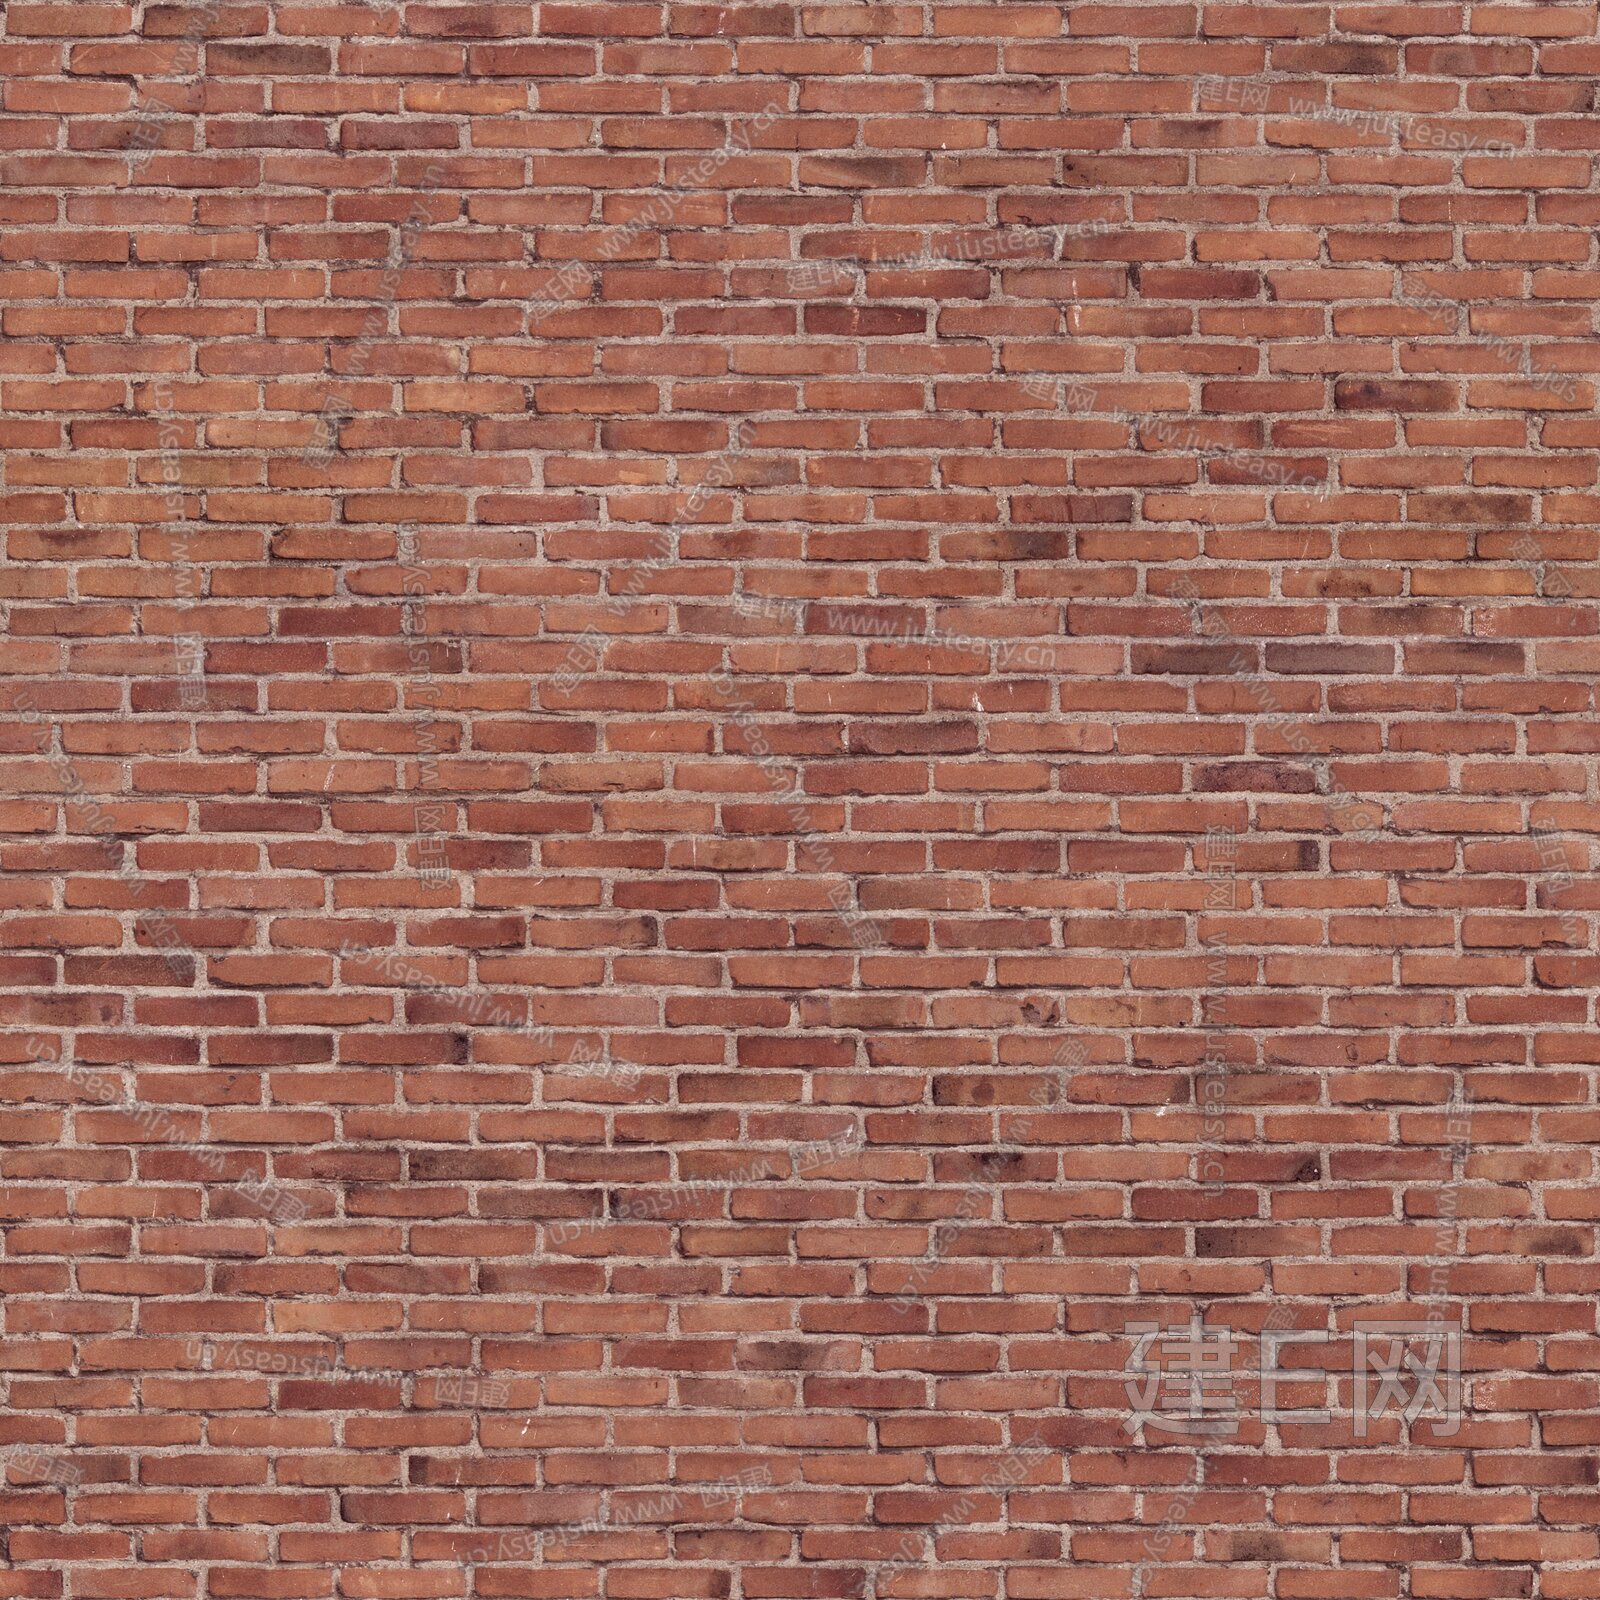 รูปBrick Red Brick Wall Brick Wall Cartoon Brick Wall Hand Painted ...